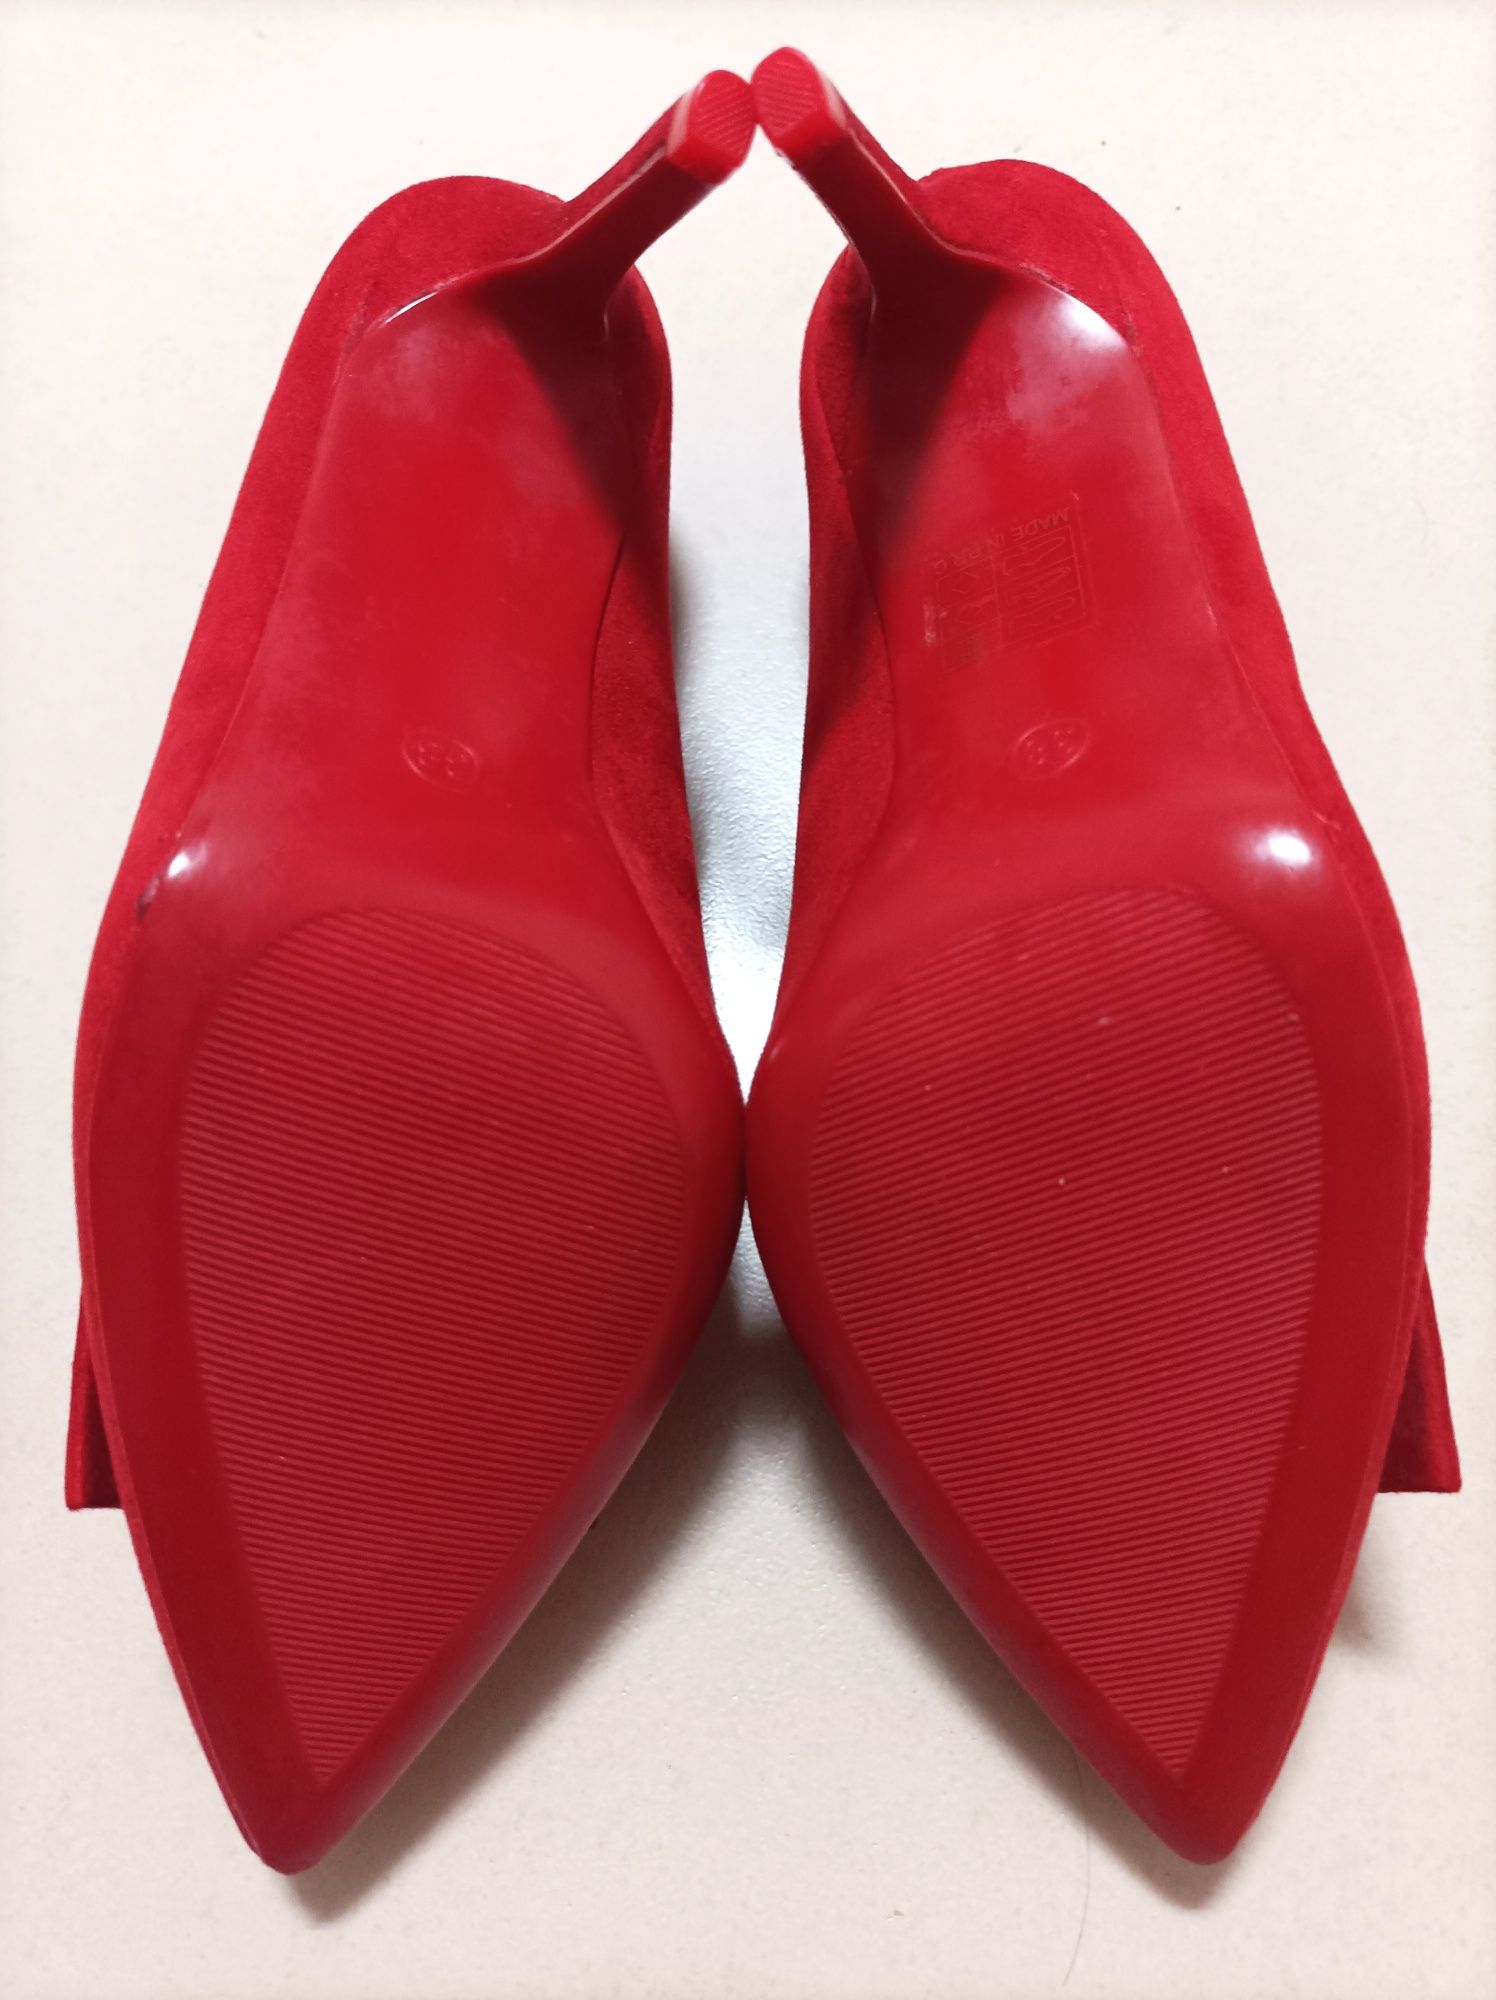 Sapatos vermelhos de salto alto (Novos - T. 38)